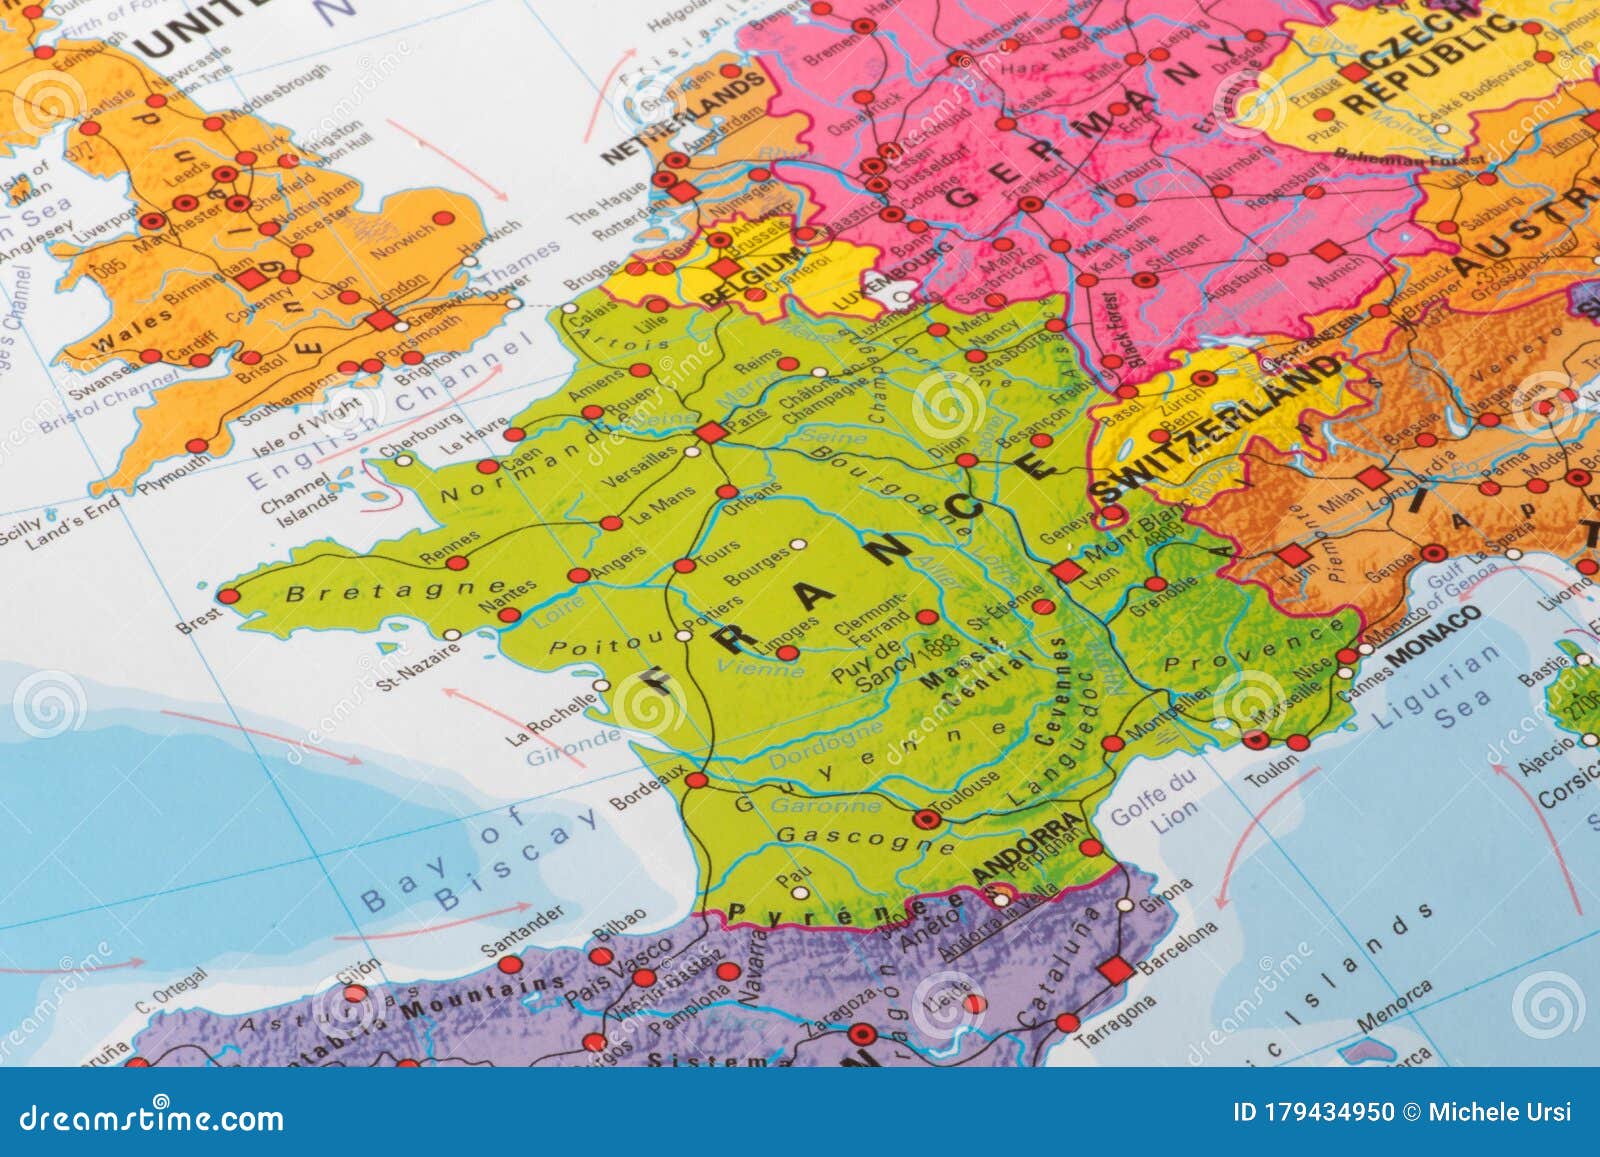 法国地形分布图_法国地图查询